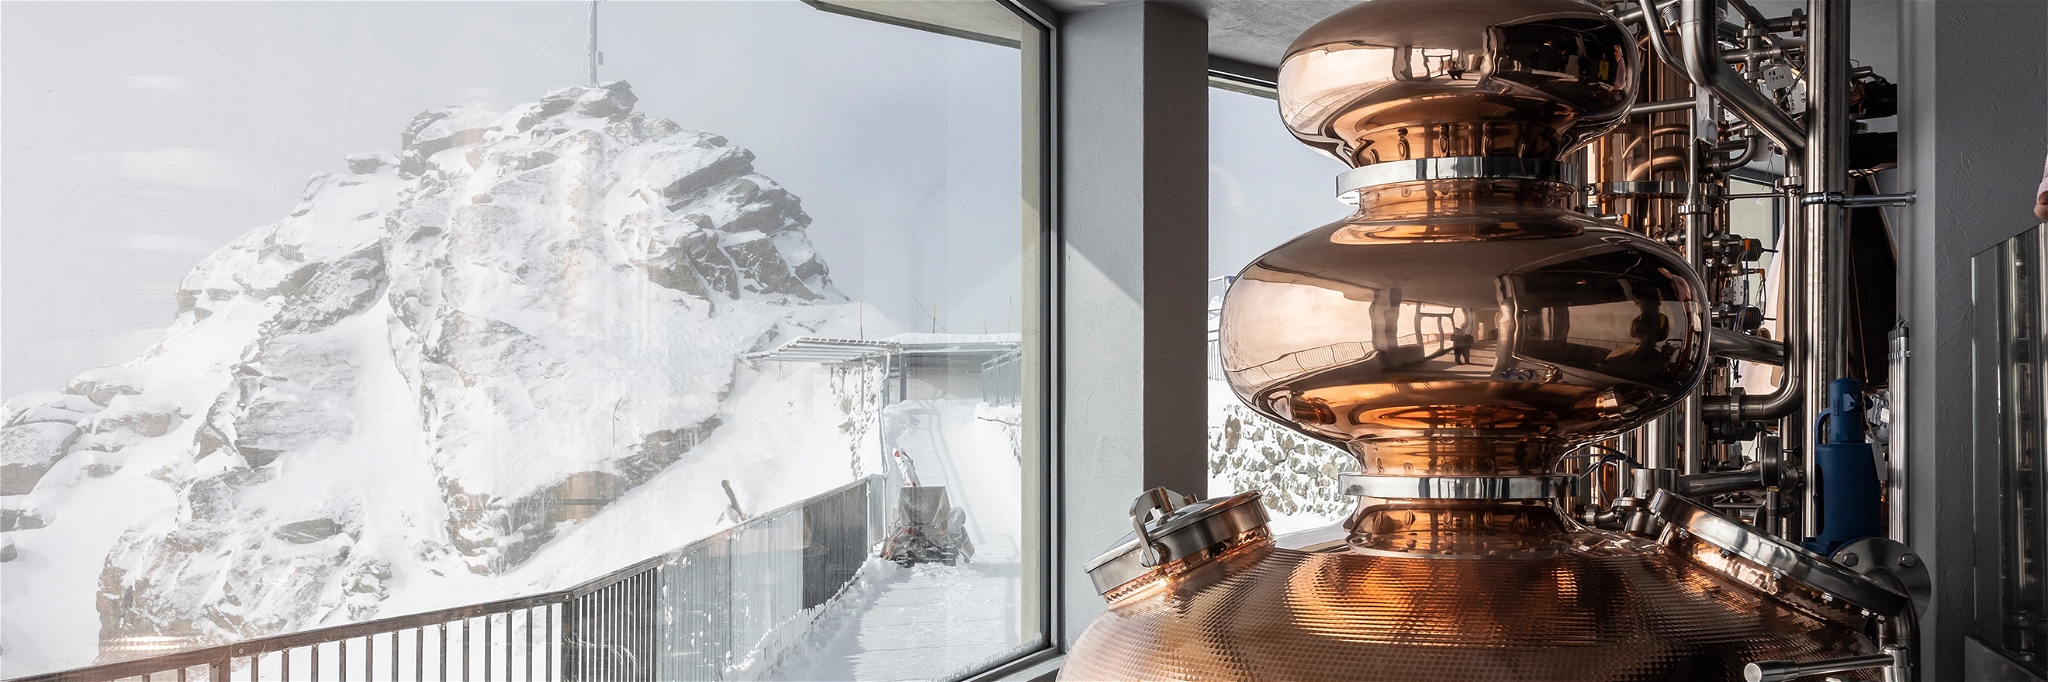 Die ORMA Whisky-Destillerie verfügt über grosse Panoramafenster mit Blick auf die Engadiner Bergwelt.